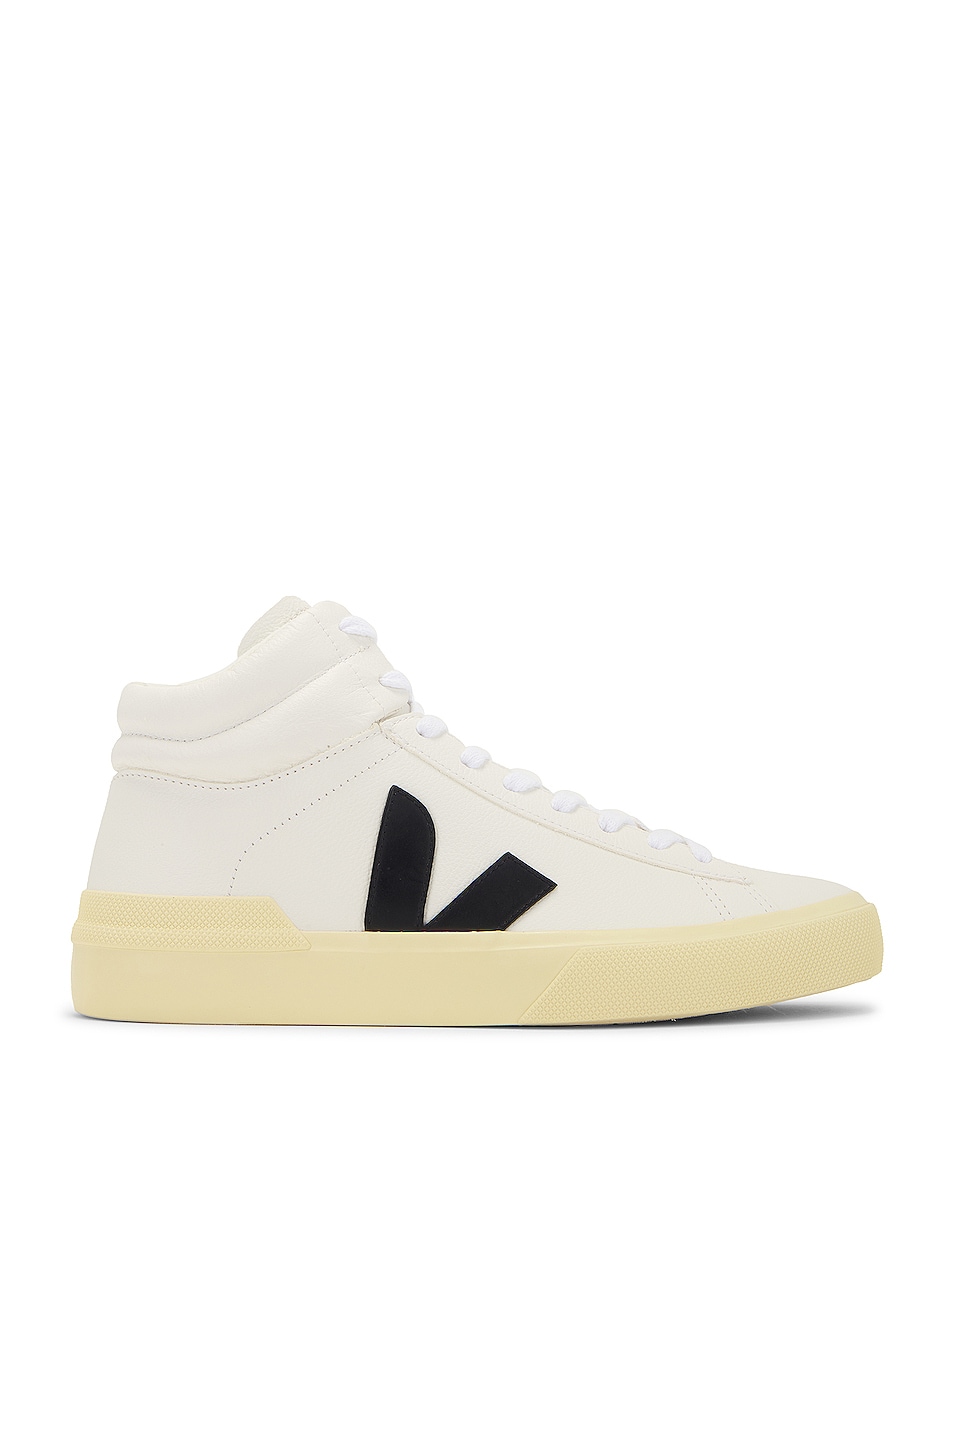 Image 1 of Veja Minotaur Bastille Sneaker in Extra White & Black Butter